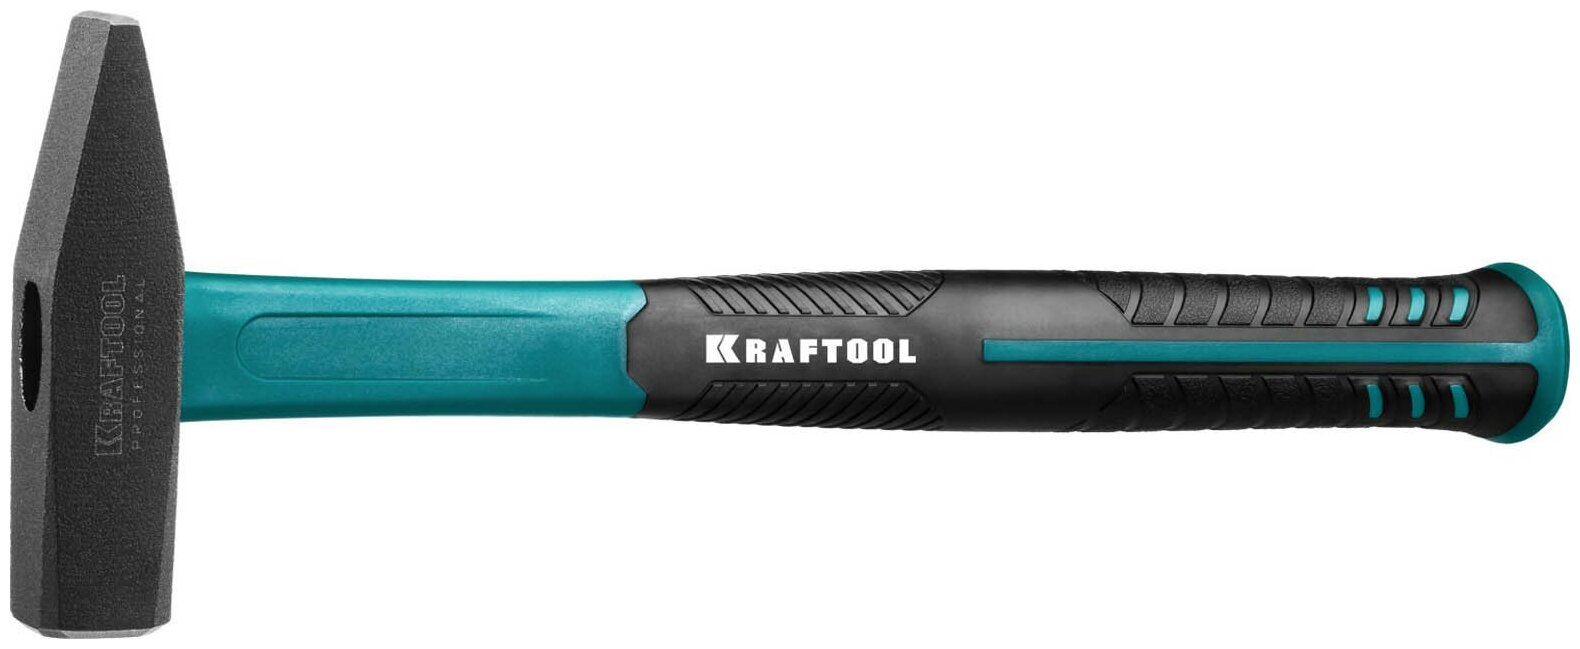 Kraftool Fiberglass 500 г молоток слесарный с фиберглассовой рукояткой .